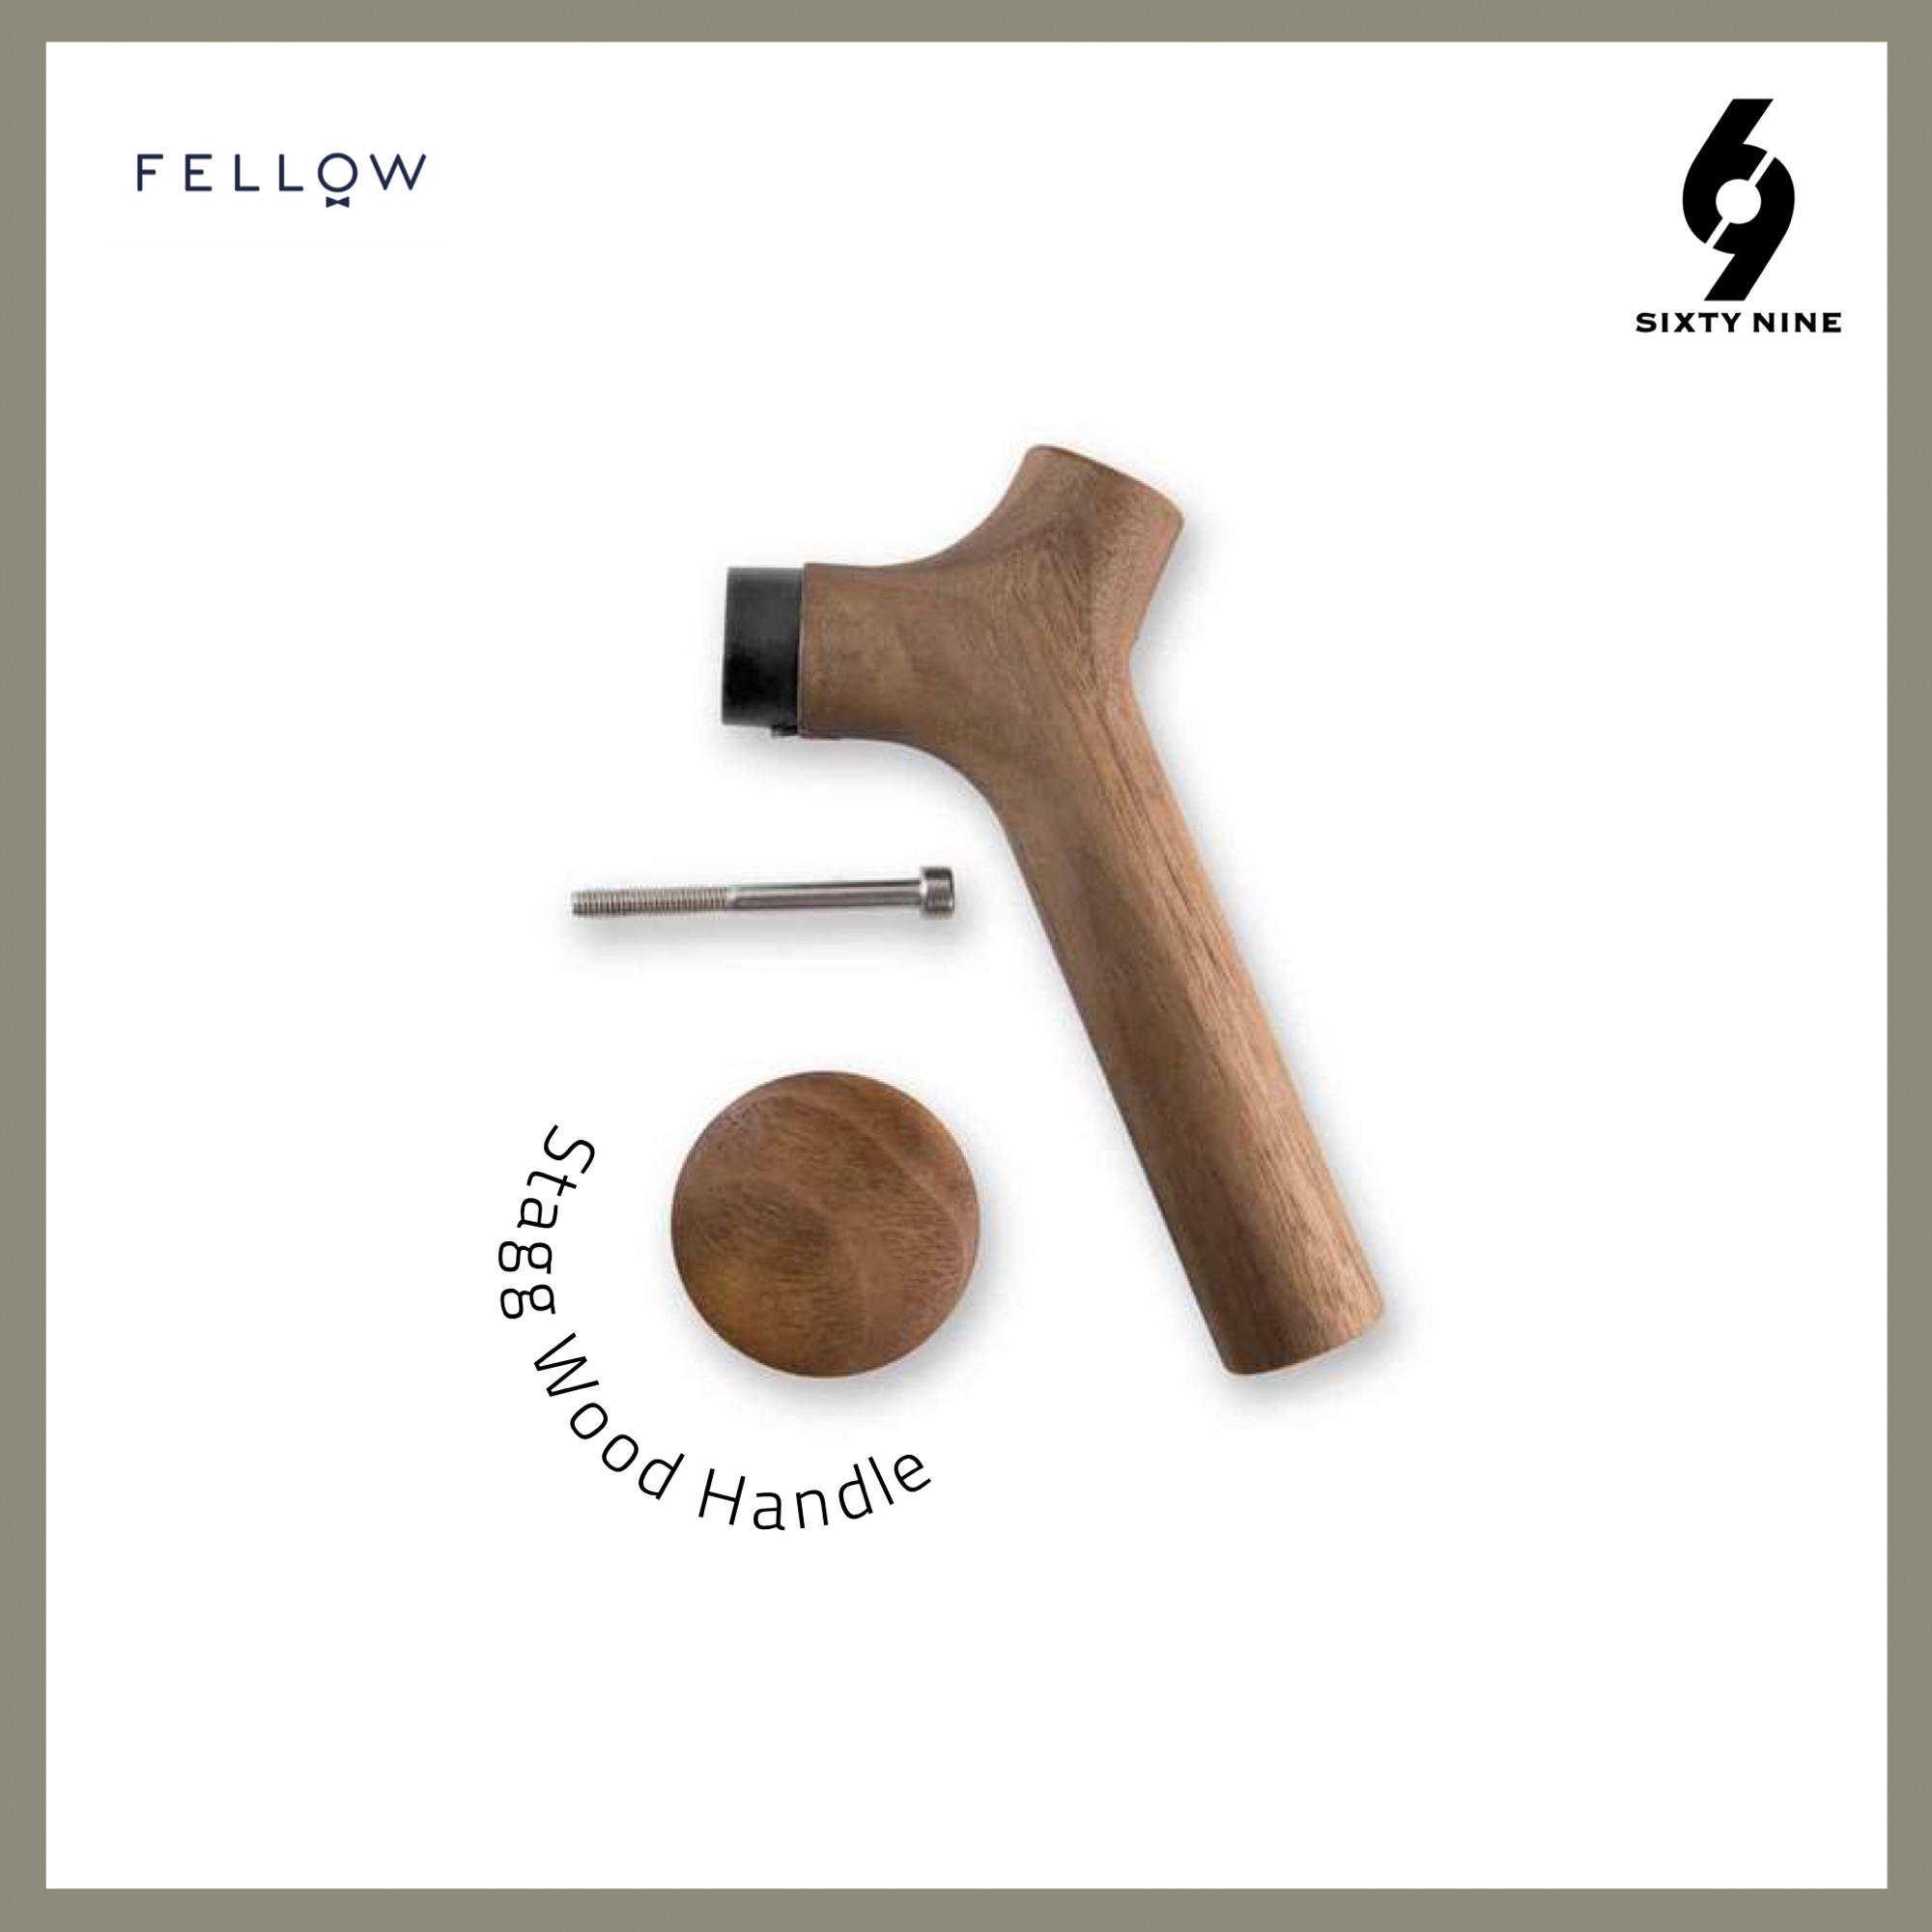 Fellow - Wood handle